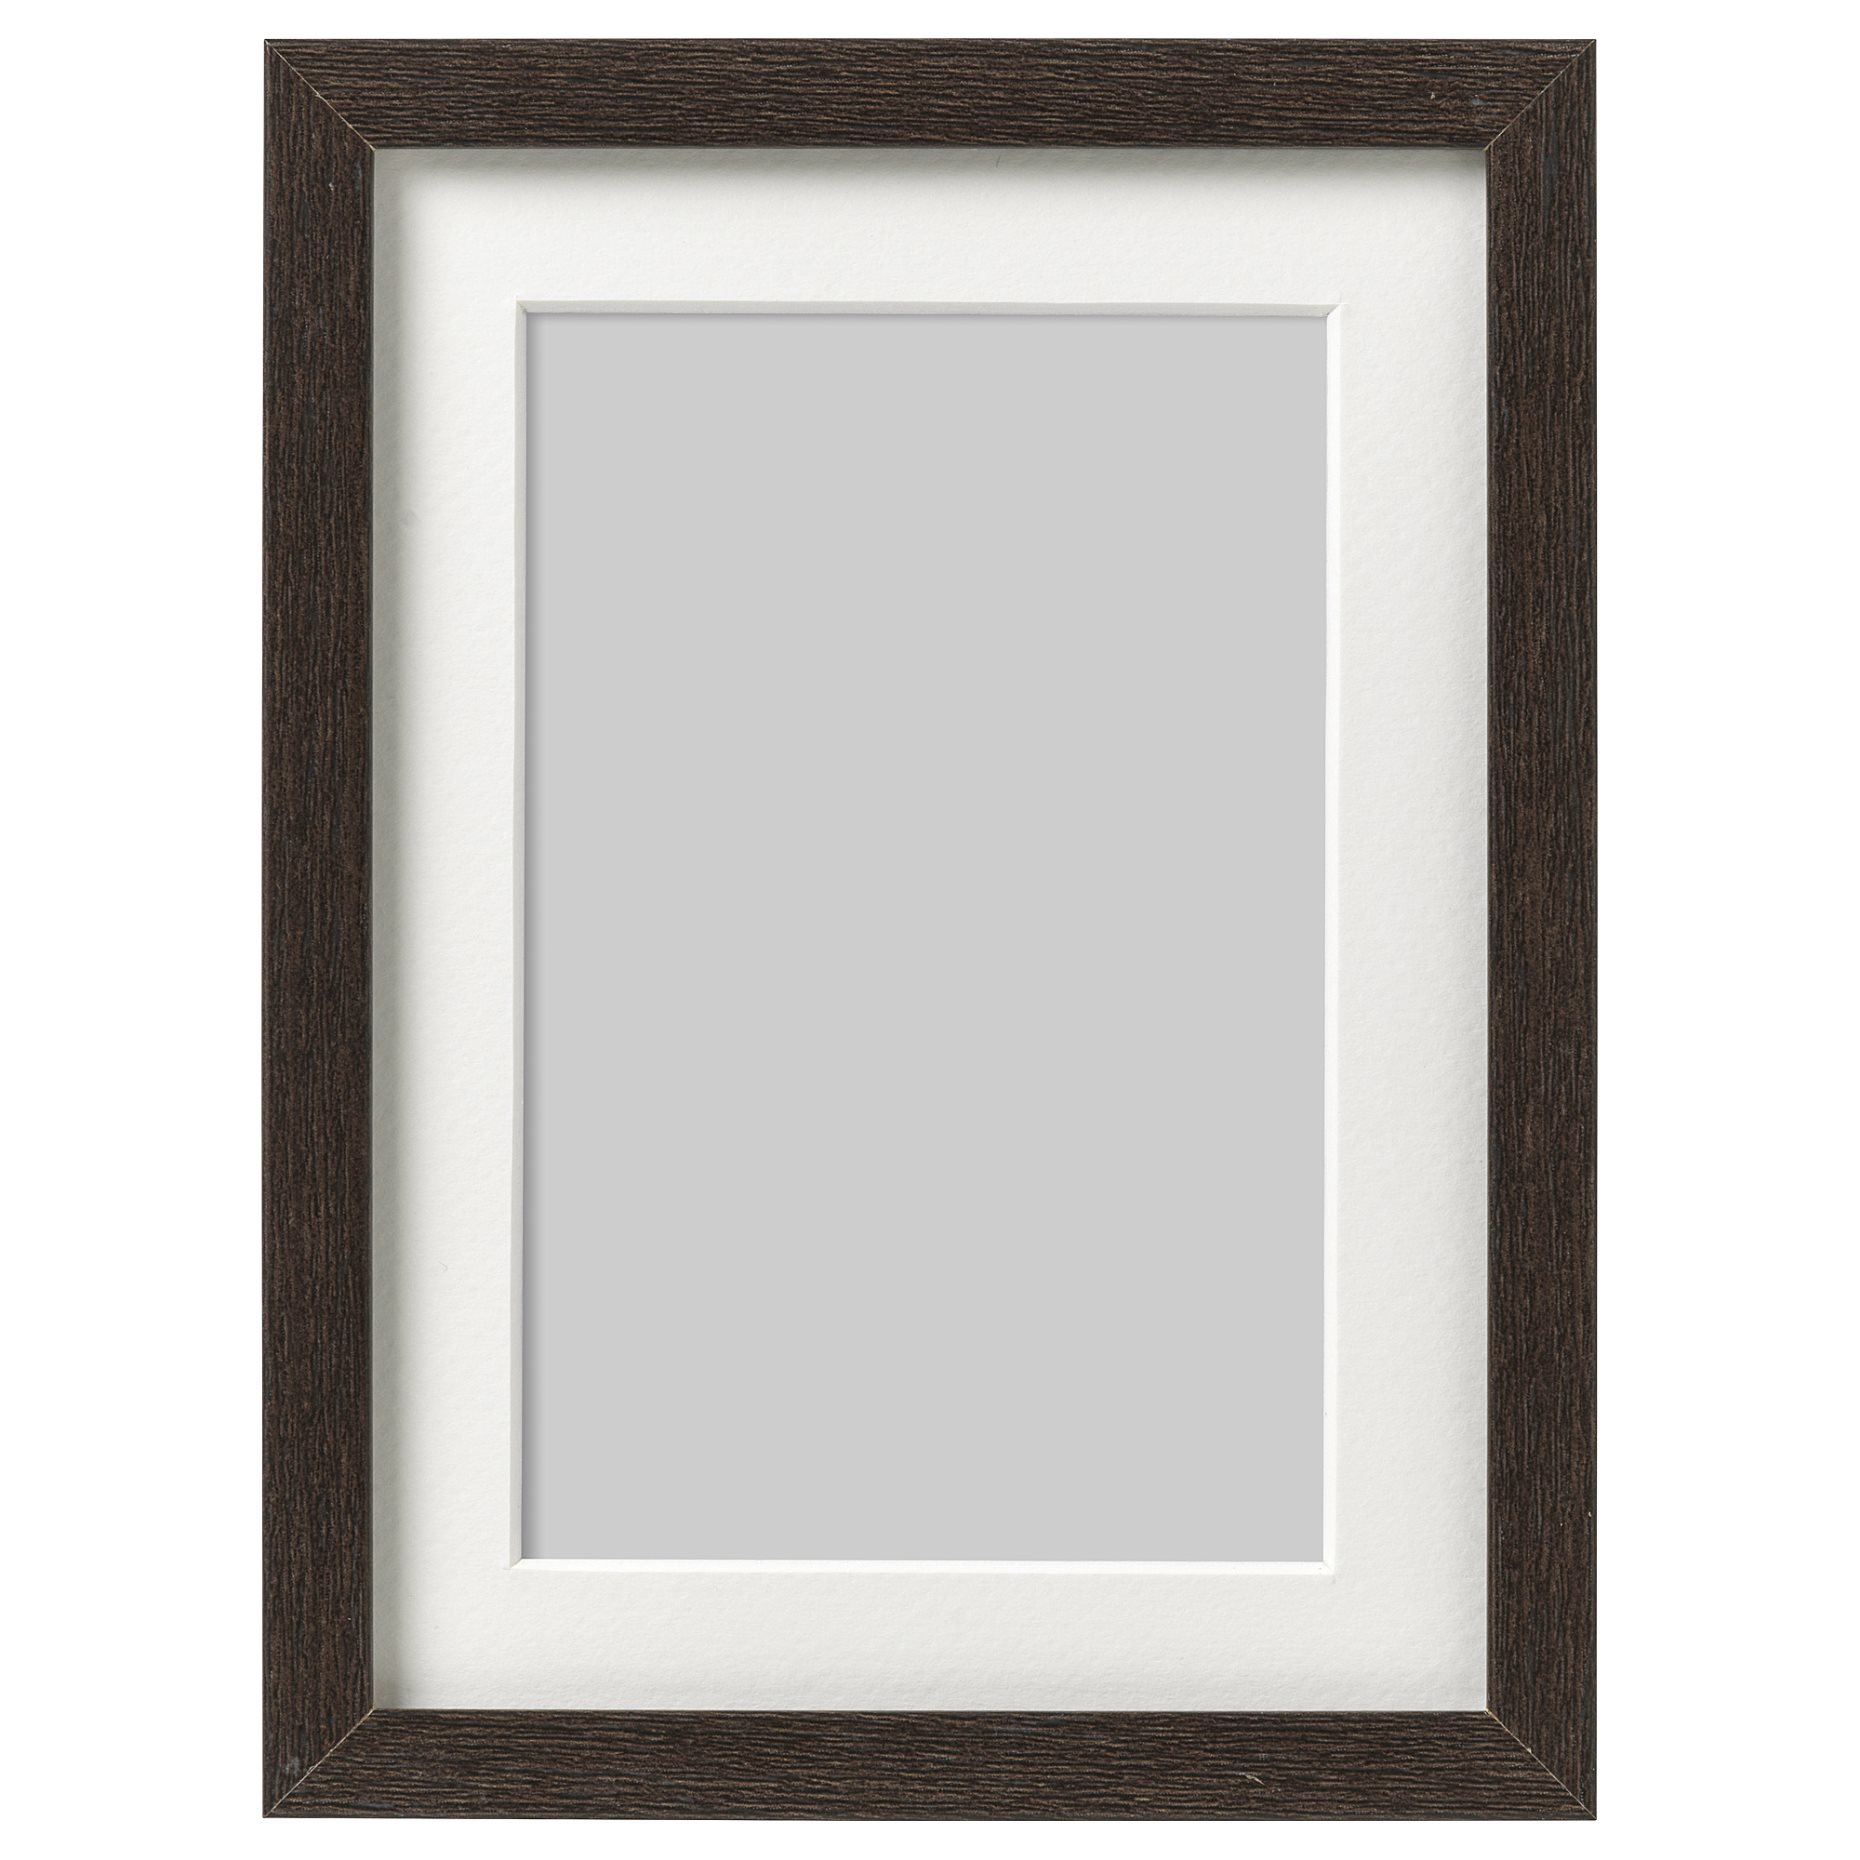 HOVSTA, frame, 13x18 cm, 703.821.66